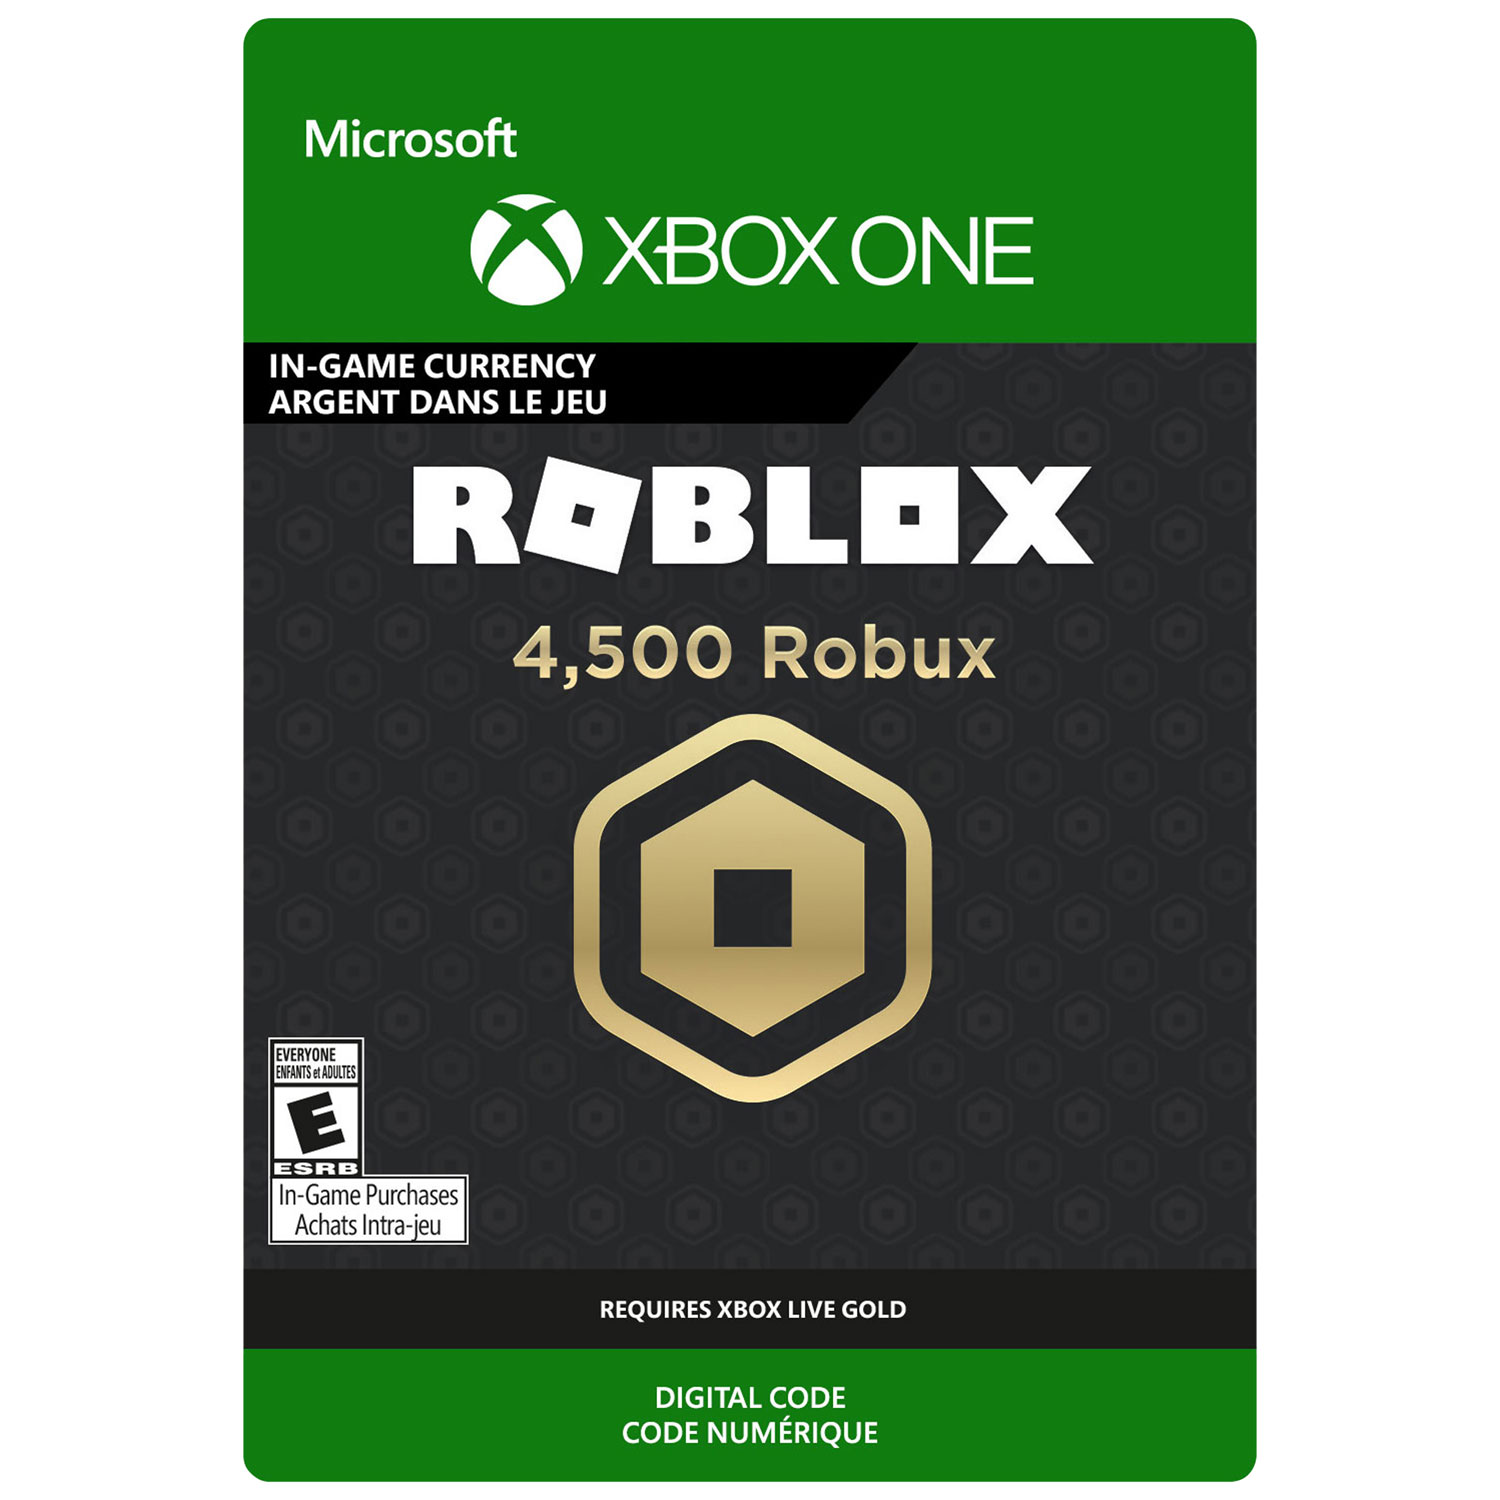 4500 Pieces Robux Pour Roblox Xbox One Telechargement Numerique Best Buy Canada - acheter des robux avec son tel